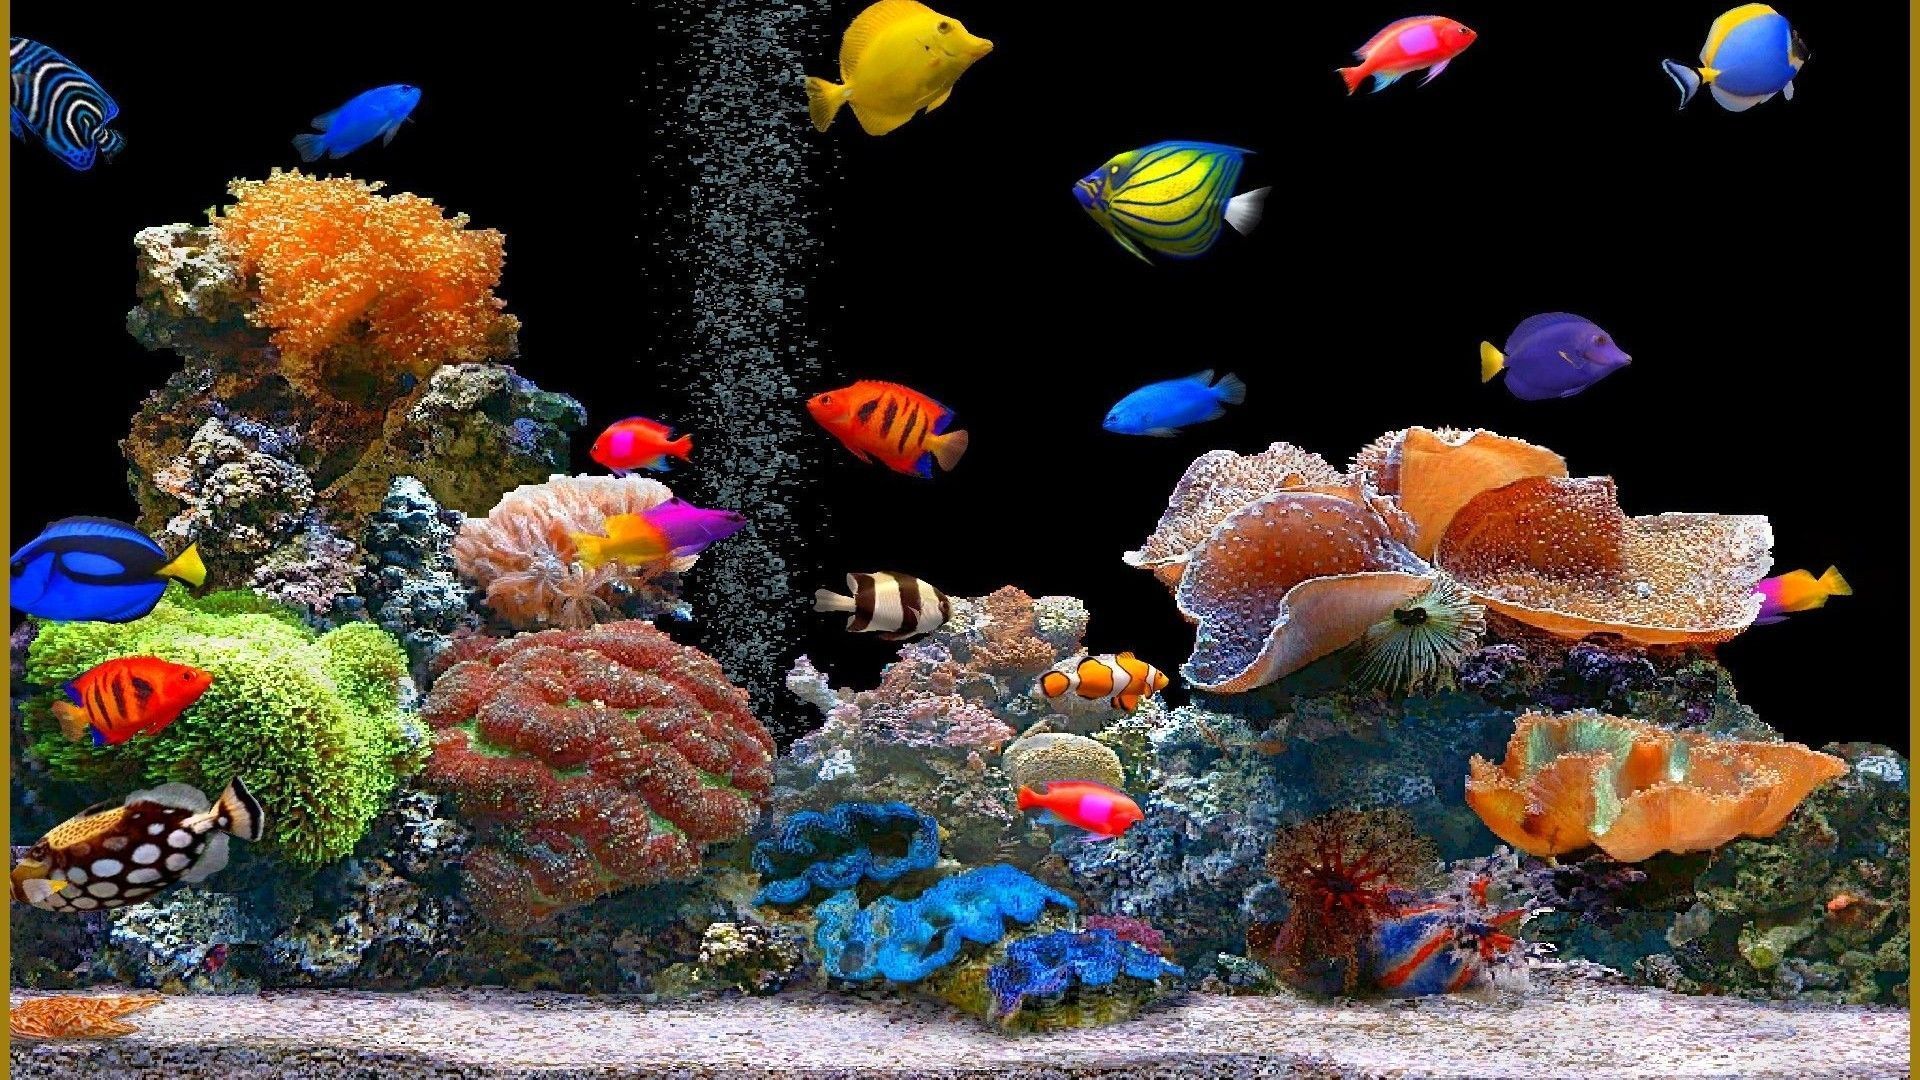  Aquarien Hintergrundbild 1920x1080. Laden Sie Das Fische Hintergrundbild Für Ihr Handy In Hochwertigen, Hintergrundbildern Fische Kostenlos Herunter